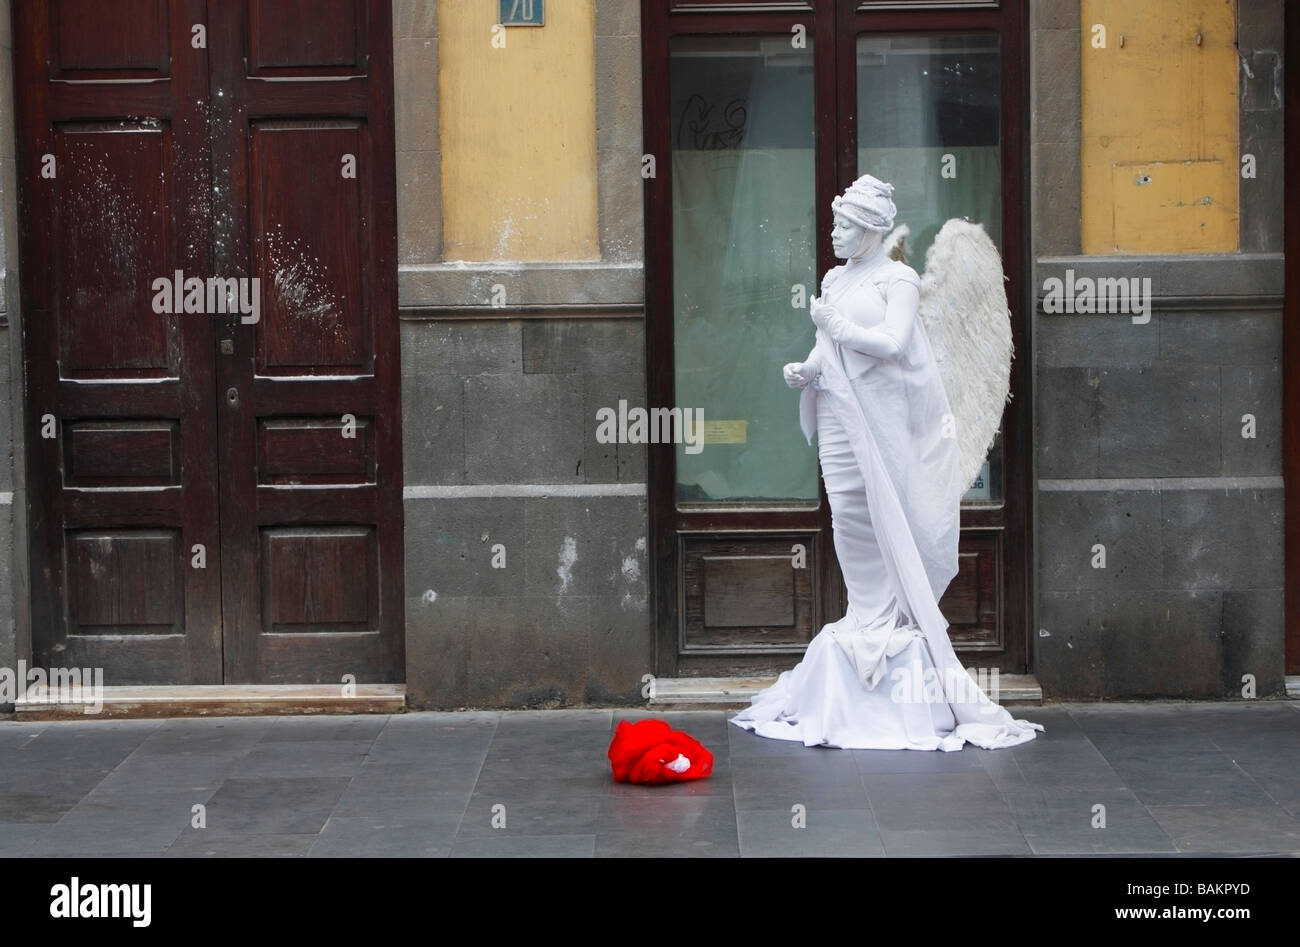 Street performer dressed as angel busking in street in Spain Stock Photo